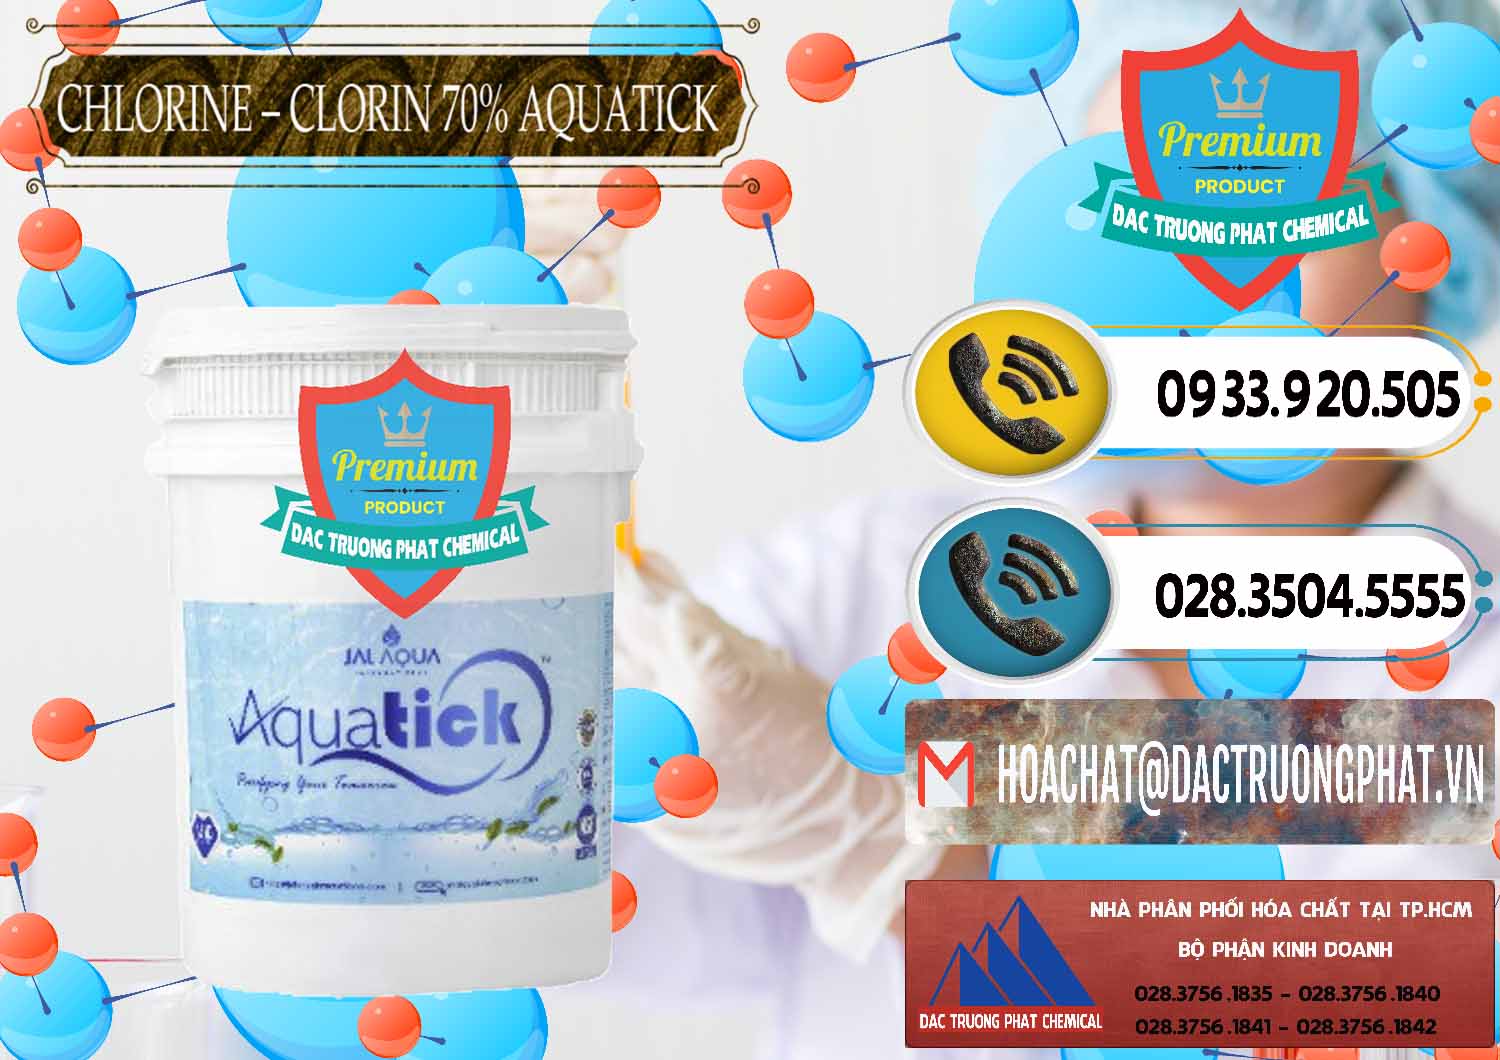 Cty bán & phân phối Chlorine – Clorin 70% Aquatick Thùng Cao Jal Aqua Ấn Độ India - 0237 - Cty kinh doanh _ cung cấp hóa chất tại TP.HCM - hoachatdetnhuom.vn